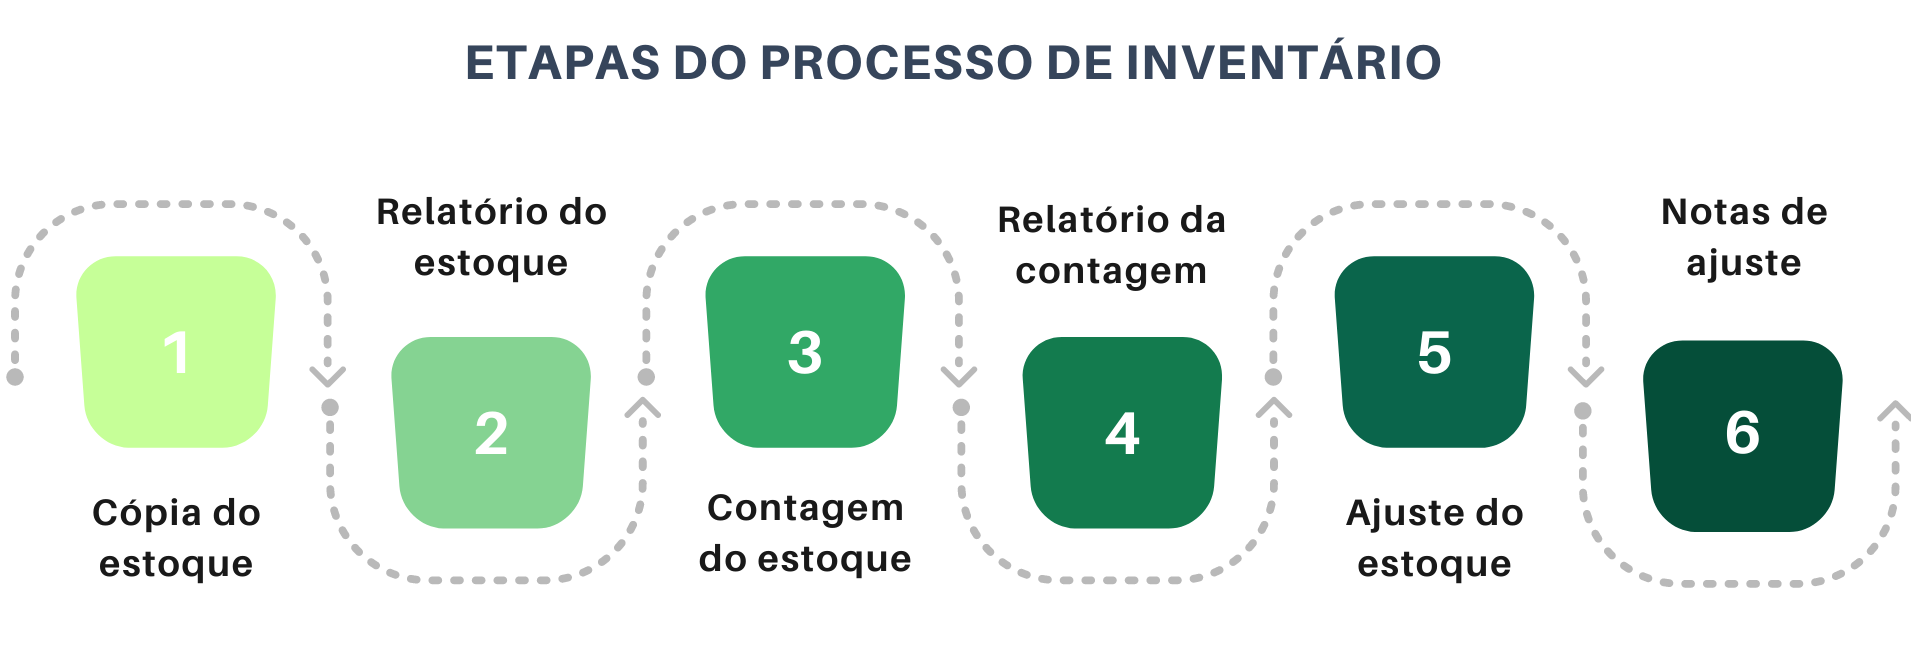 Etapas_Processo_de_inventario.png